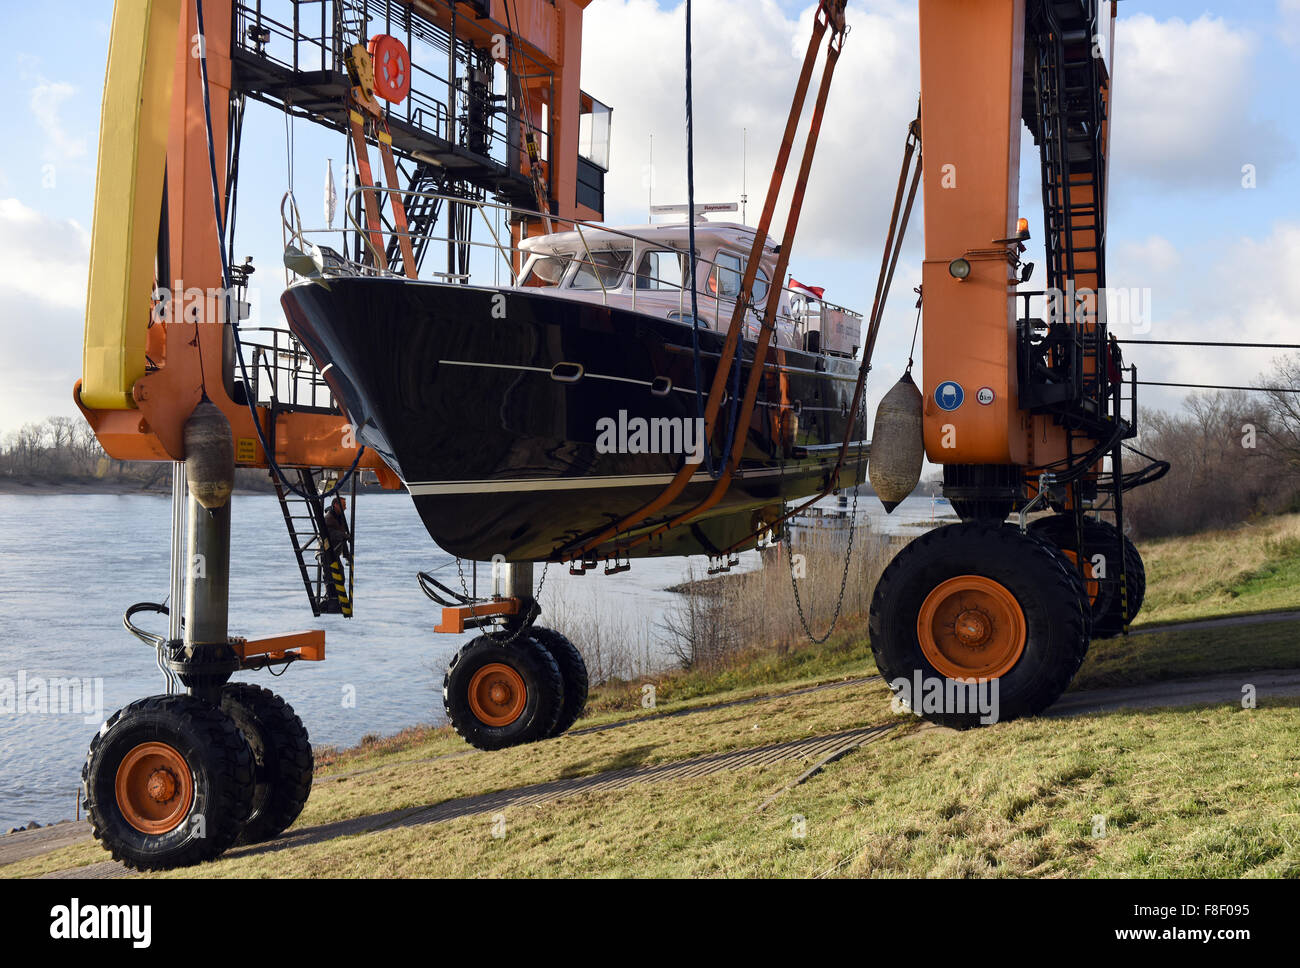 Düsseldorf, Deutschland. 9. Dezember 2015. Ein Boot-Transporter "Big Willi" hievt Motoryacht Elling E4 aus dem Rhein in der Nähe von Düsseldorf, Deutschland, 9. Dezember 2015. Das fast 14,95 Meter lange ist Boot das erste in Düsseldorf ankommen. Dort wird es vom 21. Januar 2015 bis 31. Januar 2016 sein. Foto: CAROLINE SEIDEL/Dpa/Alamy Live News Stockfoto